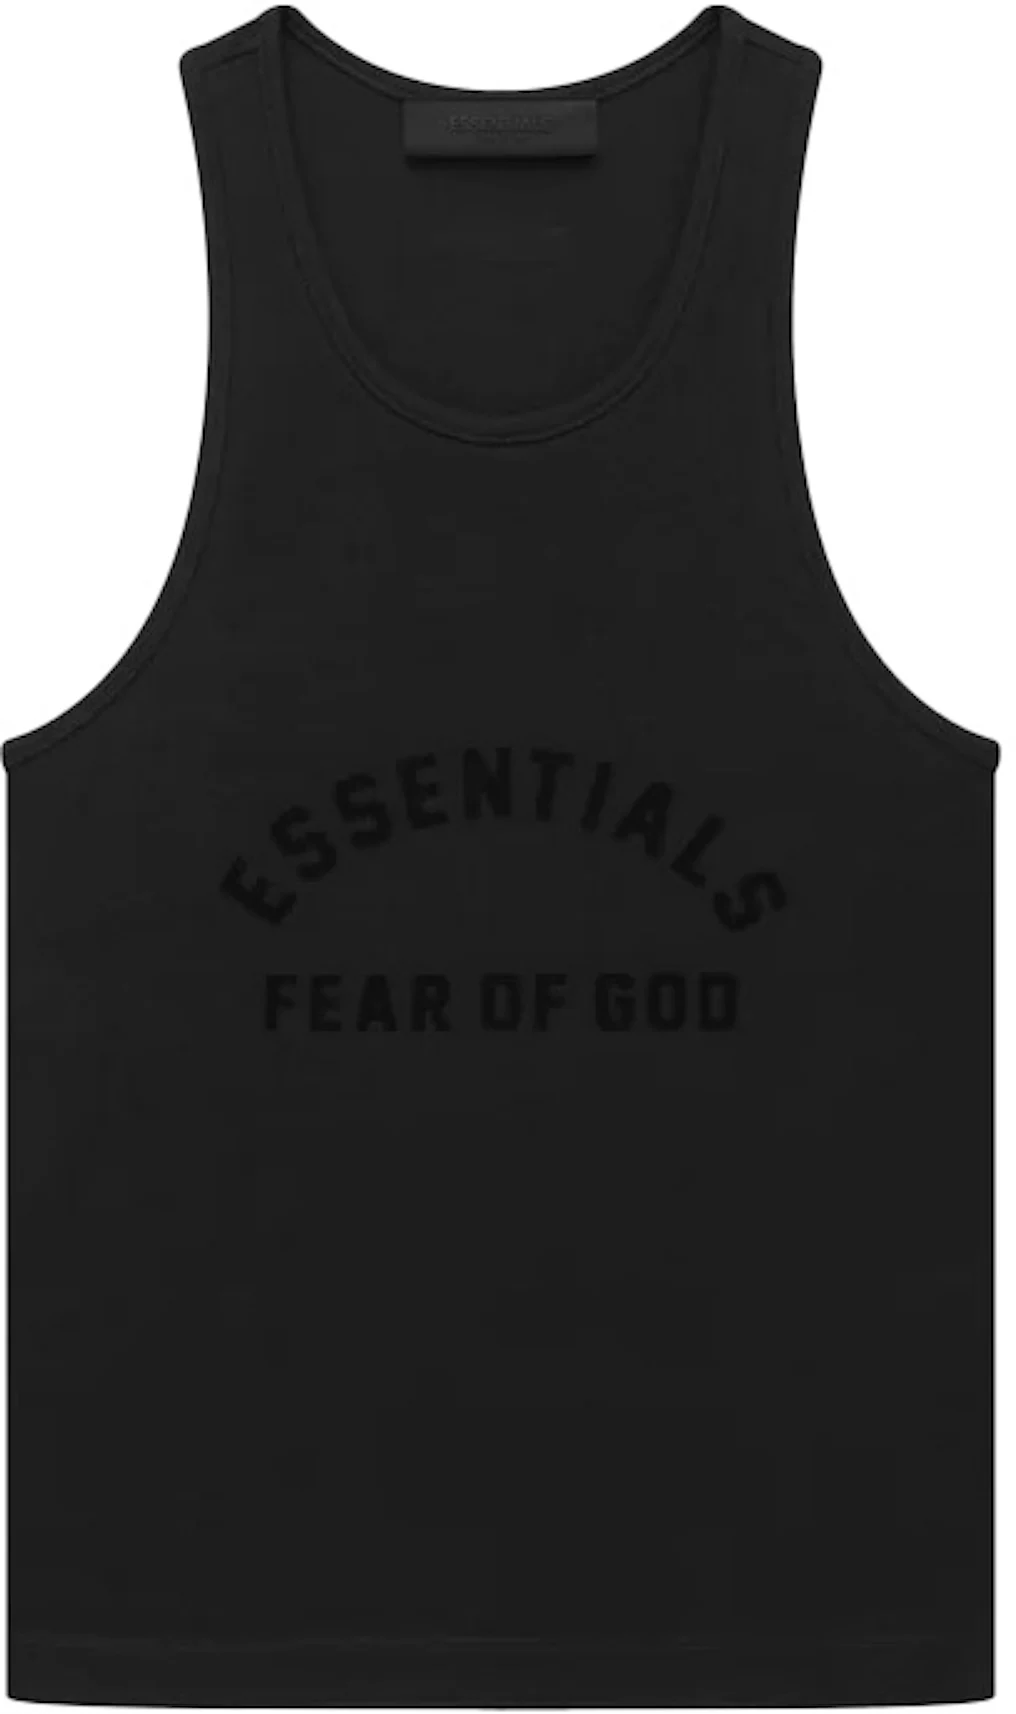 Fear of God Women's Essentials Tanktop Black - SS23 - US